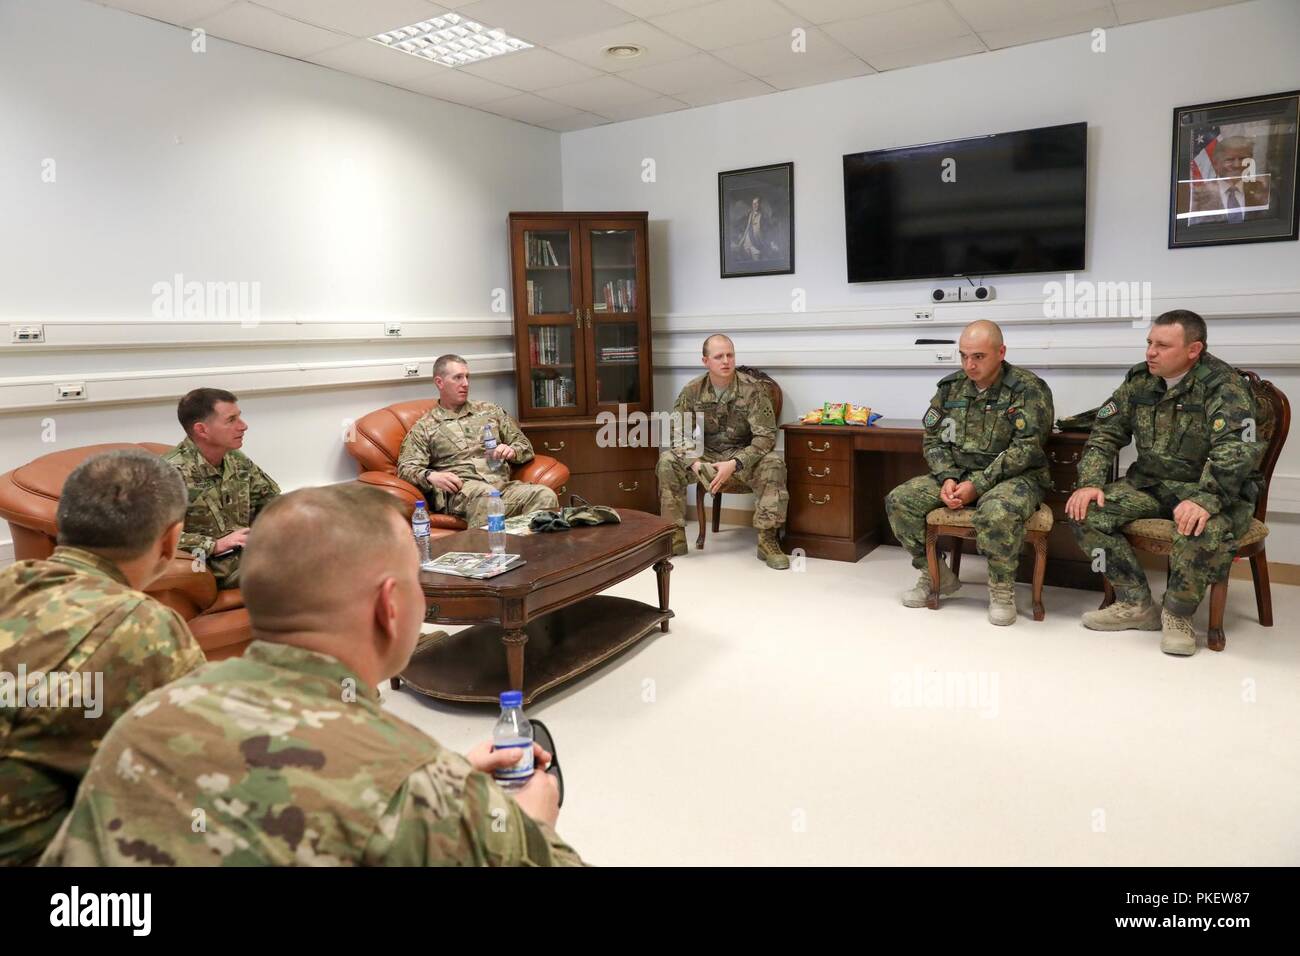 L'AÉRODROME DE KANDAHAR, Afghanistan (1 août 2018) -- U.S. Army Command Sgt. Le major William F. Thetford, le Commandement central américain enrôlé senior leader, parle aux soldats bulgares et roumains, le 1 août 2018, lors de sa visite à l'aérodrome de Kandahar, Afghanistan. Thetford engagé avec les dirigeants de former, conseiller et assister les Command-South, l'équipe de combat de la 2e Brigade d'infanterie, 4e Division d'infanterie, 451e Escadre expéditionnaire de la Force de sécurité, 1re Brigade d'aide, Groupe de travail Panther, l'OTAN L'Unité médicale multinationale de rôle III et d'autres unités au cours de sa visite. Banque D'Images